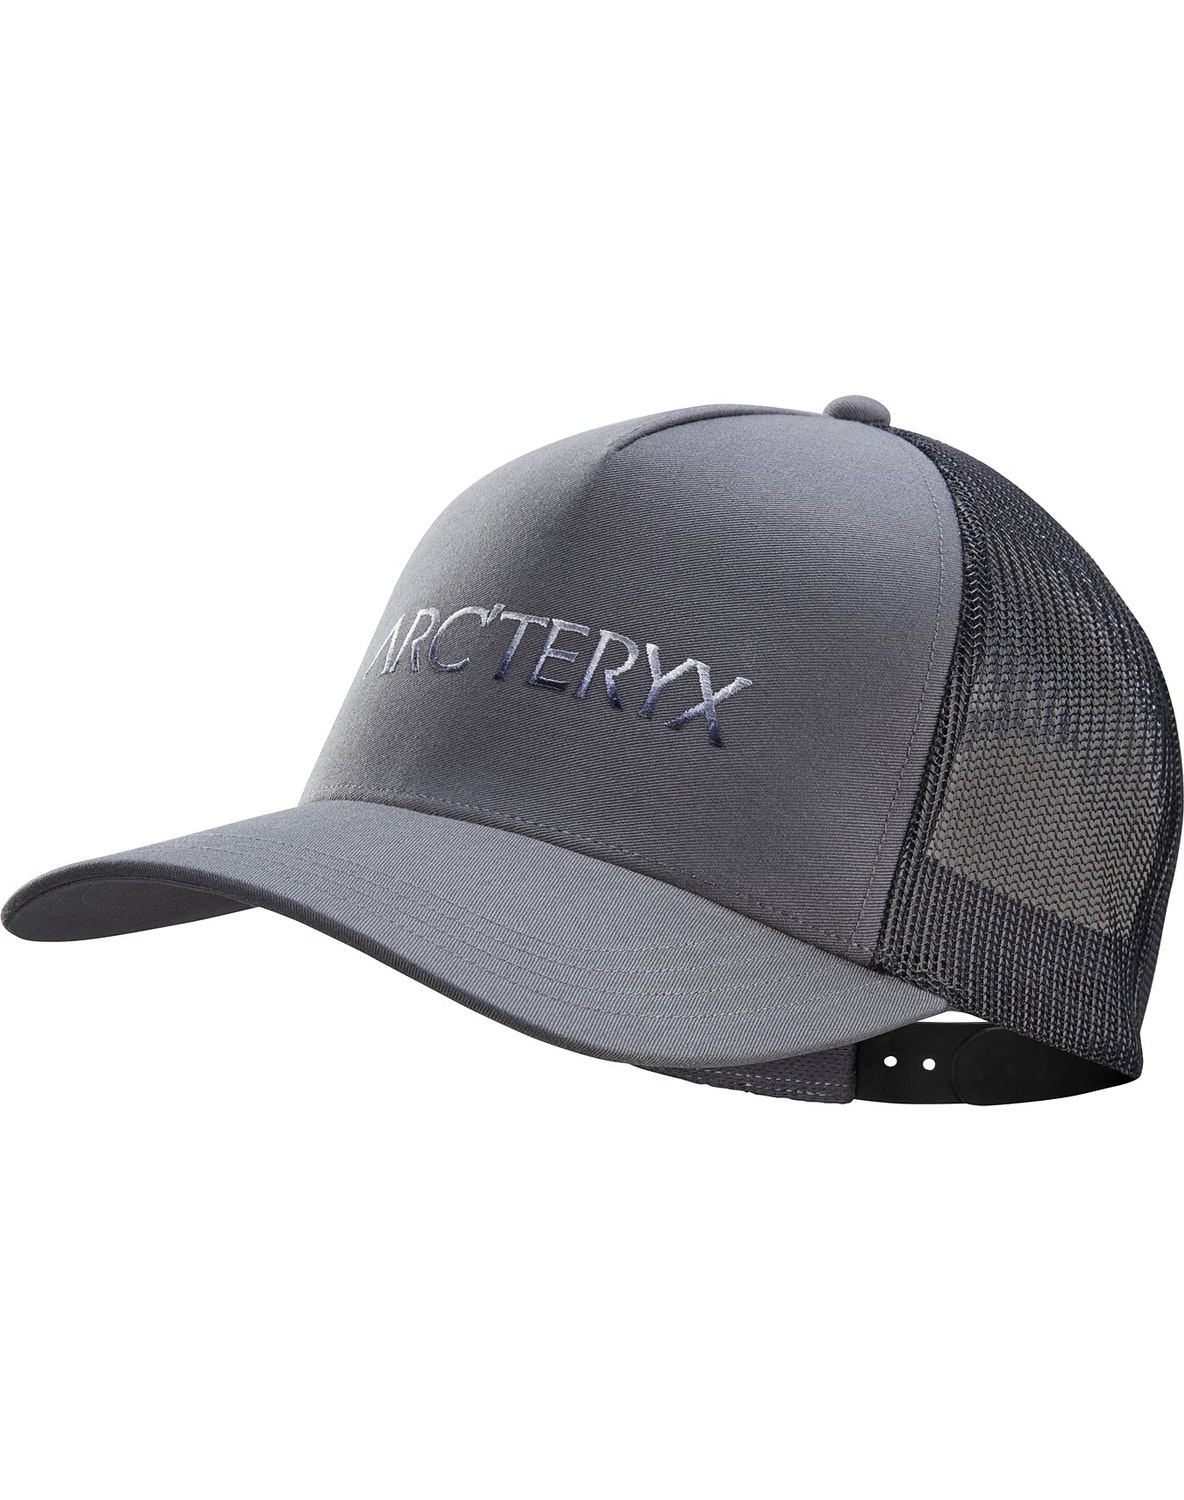 Hats Arc'teryx Polychrome Curved Brim Uomo Grigie/Nere - IT-3655335